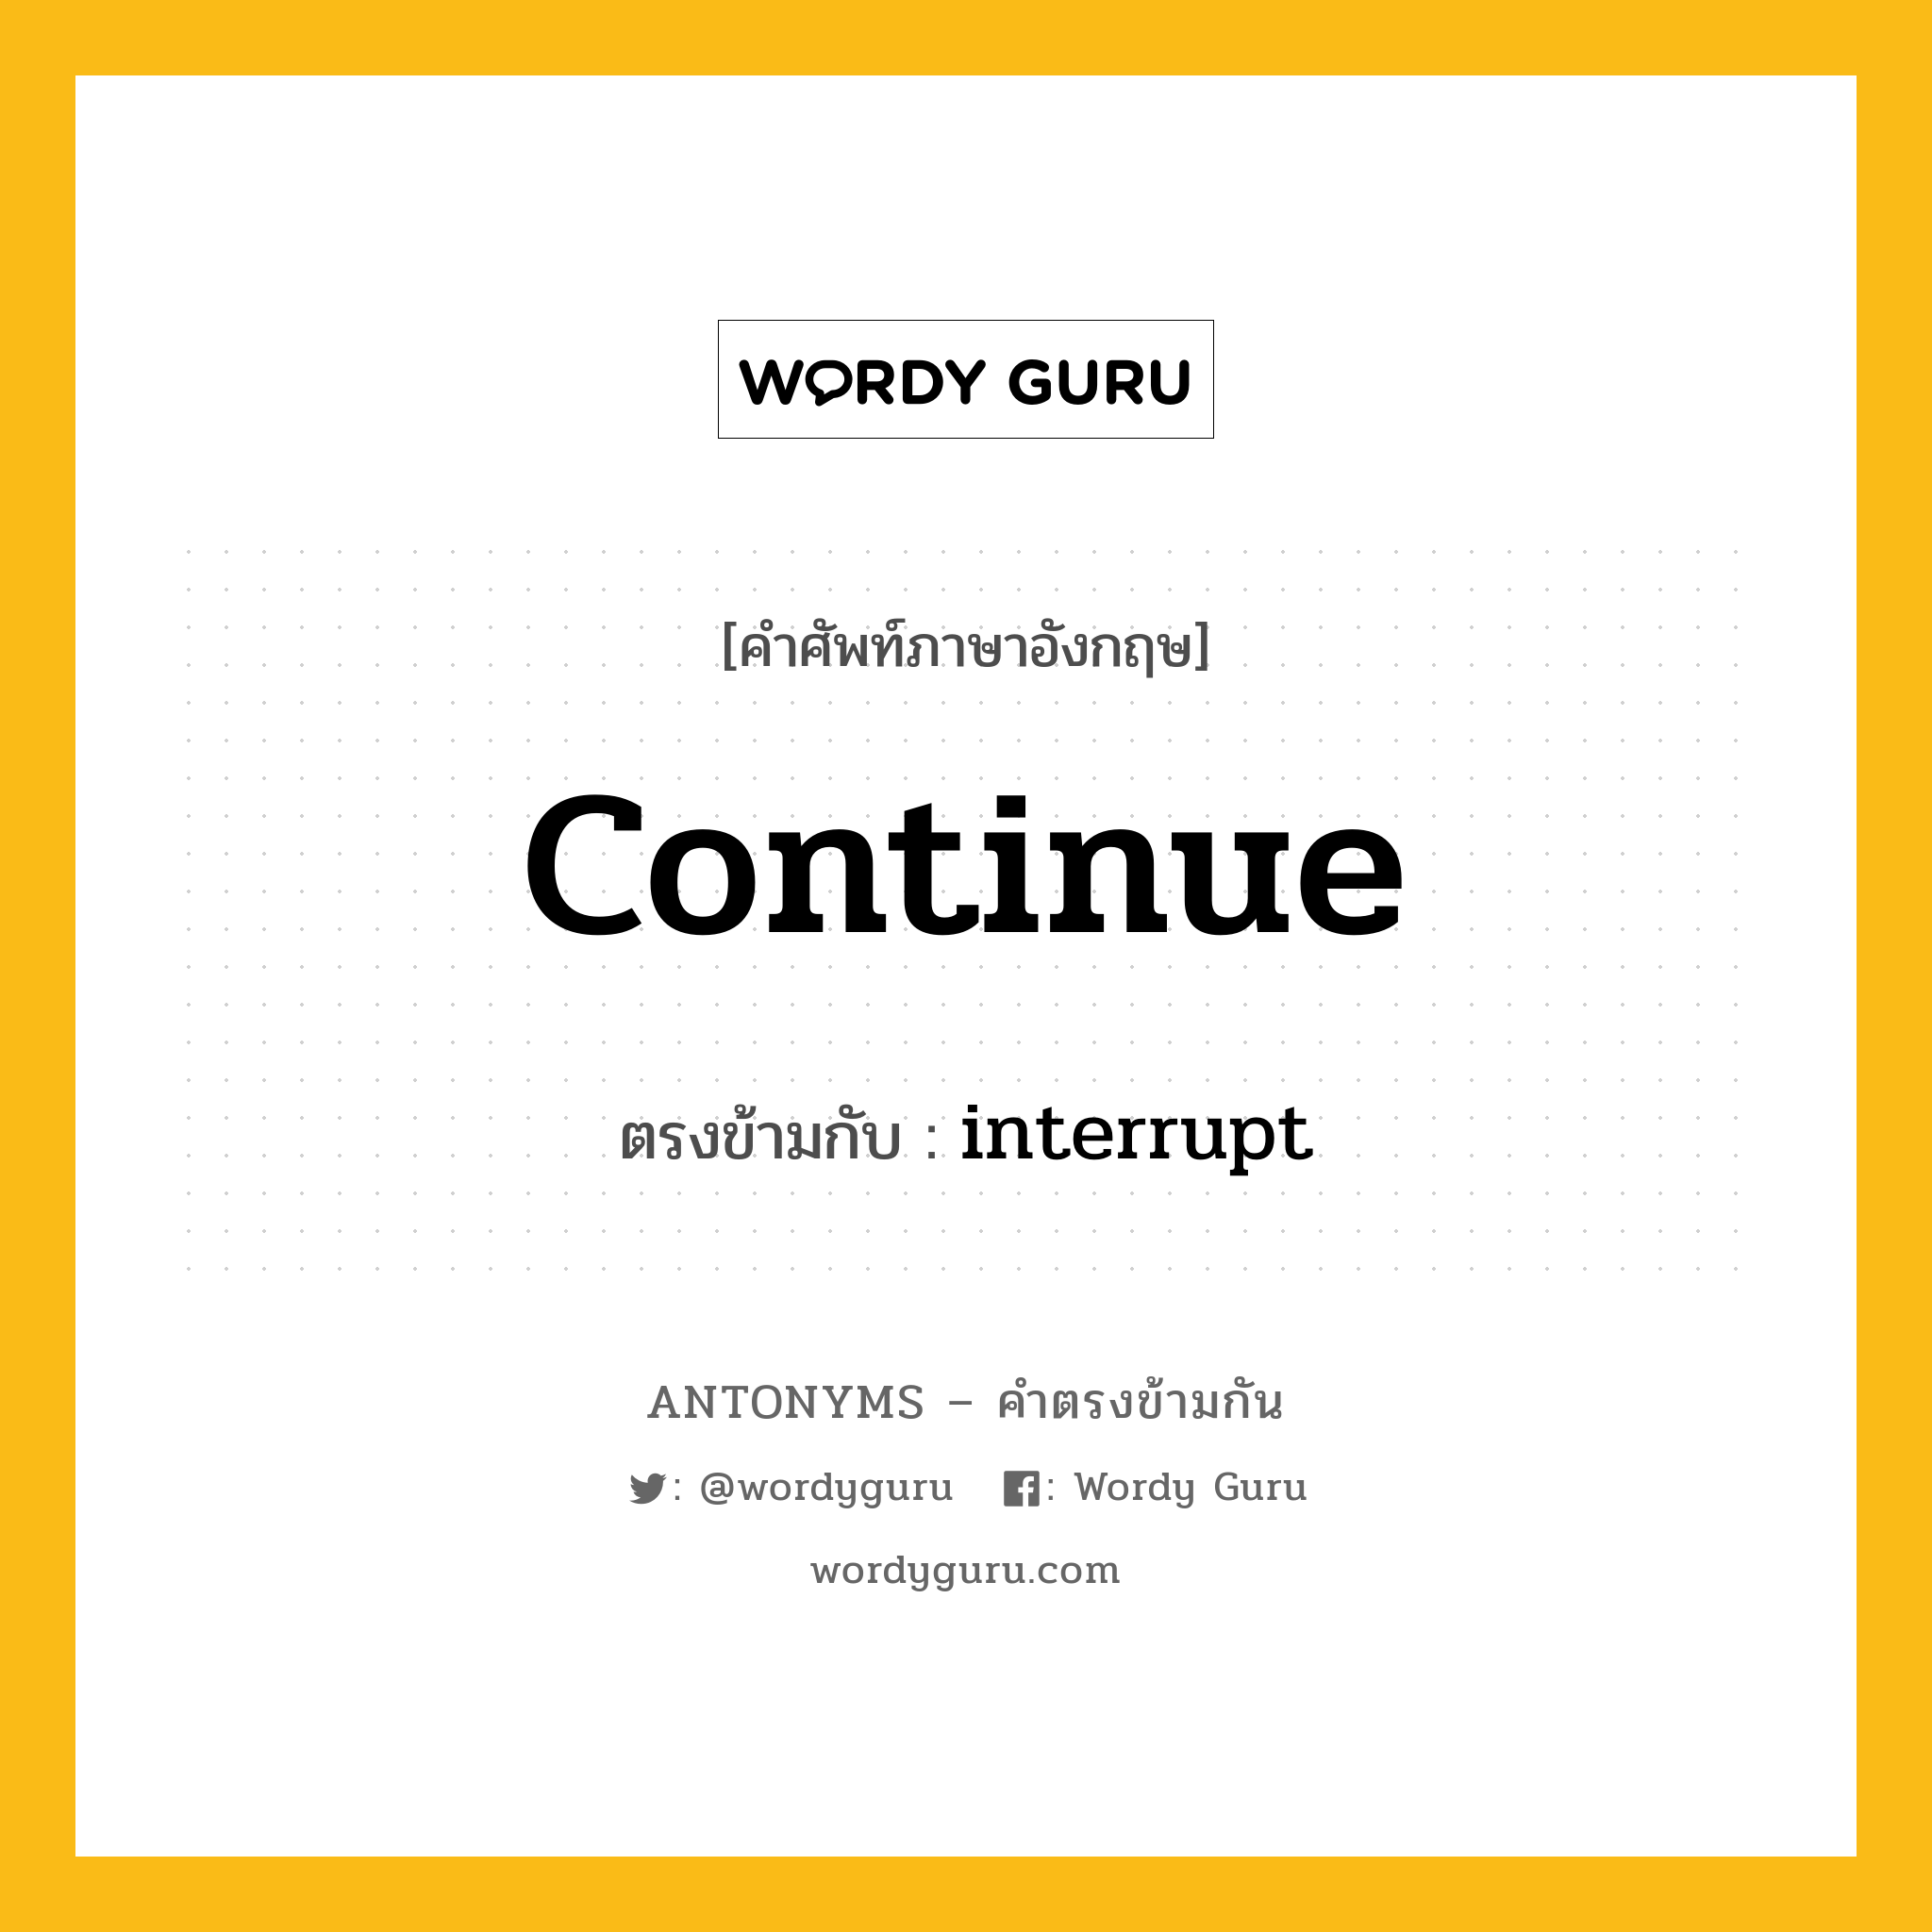 continue เป็นคำตรงข้ามกับคำไหนบ้าง?, คำศัพท์ภาษาอังกฤษ continue ตรงข้ามกับ interrupt หมวด interrupt